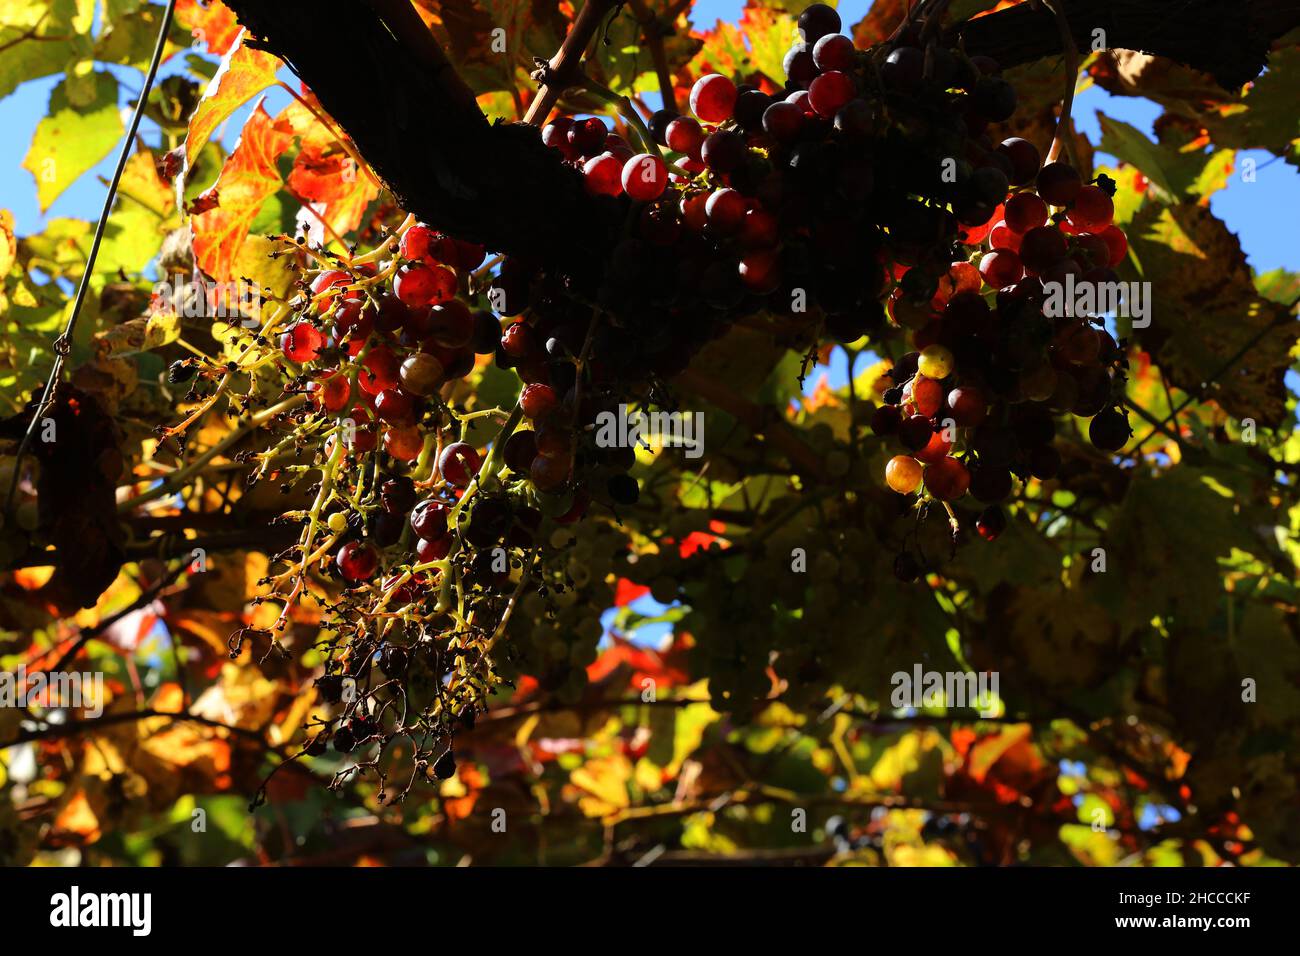 Meran, Gärten von Schloss Trauttmansdorff  eröffnen exotische Gartenlandschaften, mit reifen und blühenden Weintrauben Südtirol, Dolomiten, Italien Stock Photo